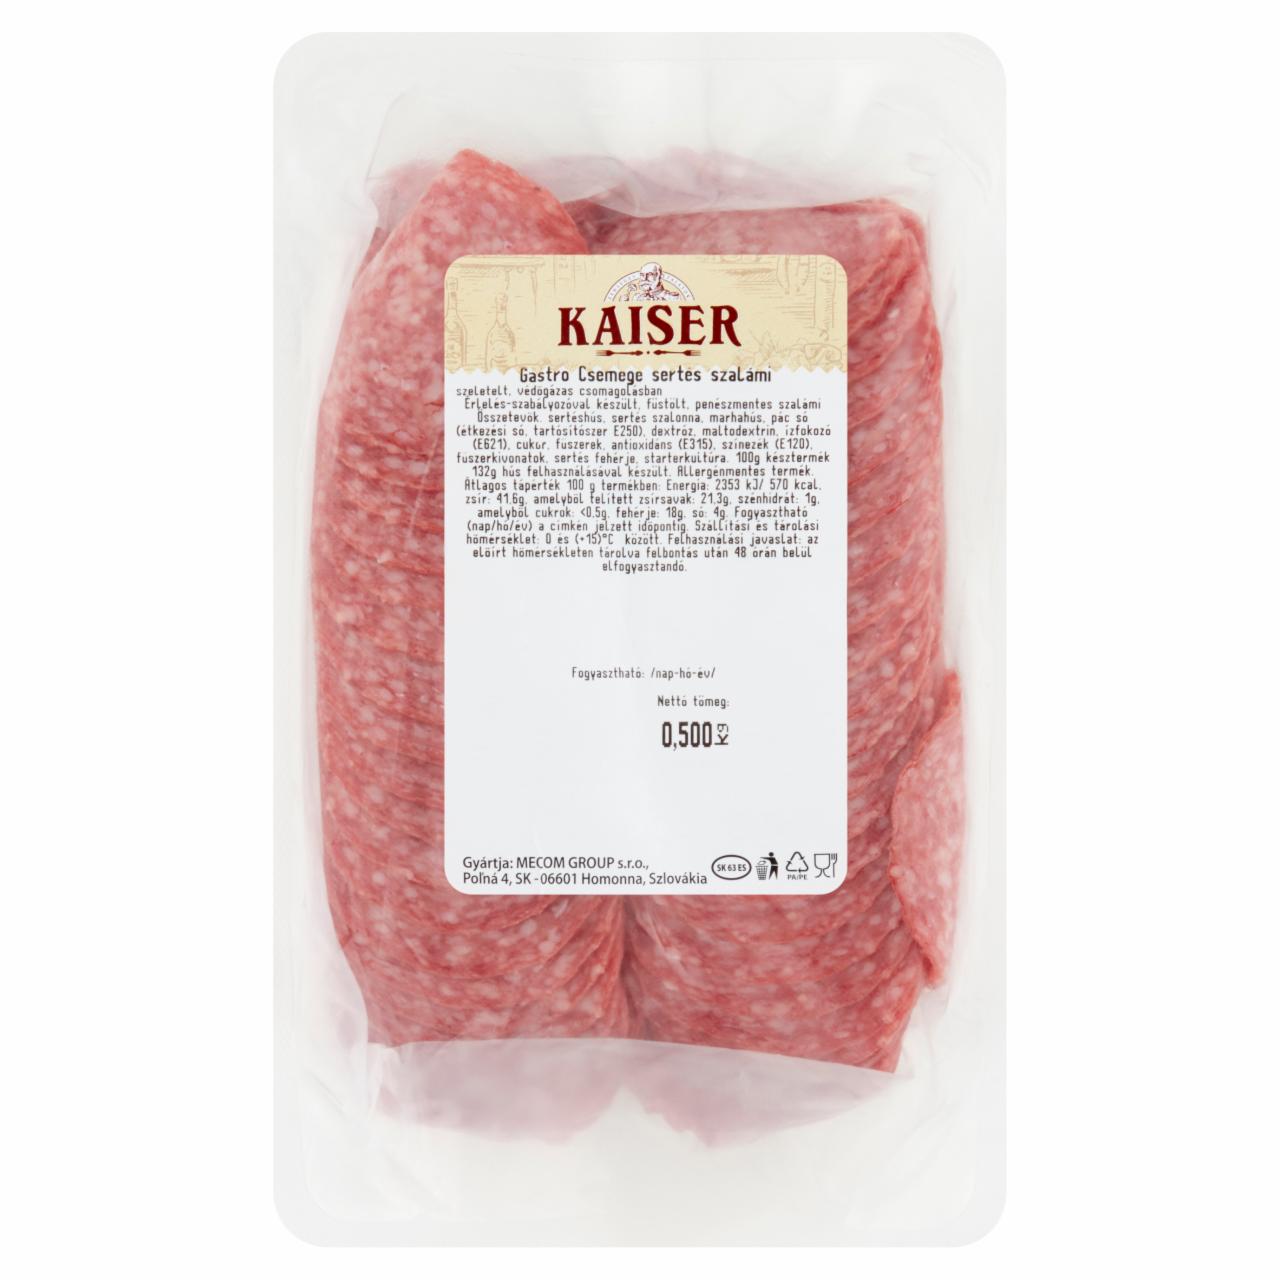 Képek - Kaiser Gastro szeletelt csemege sertés szalámi 500 g